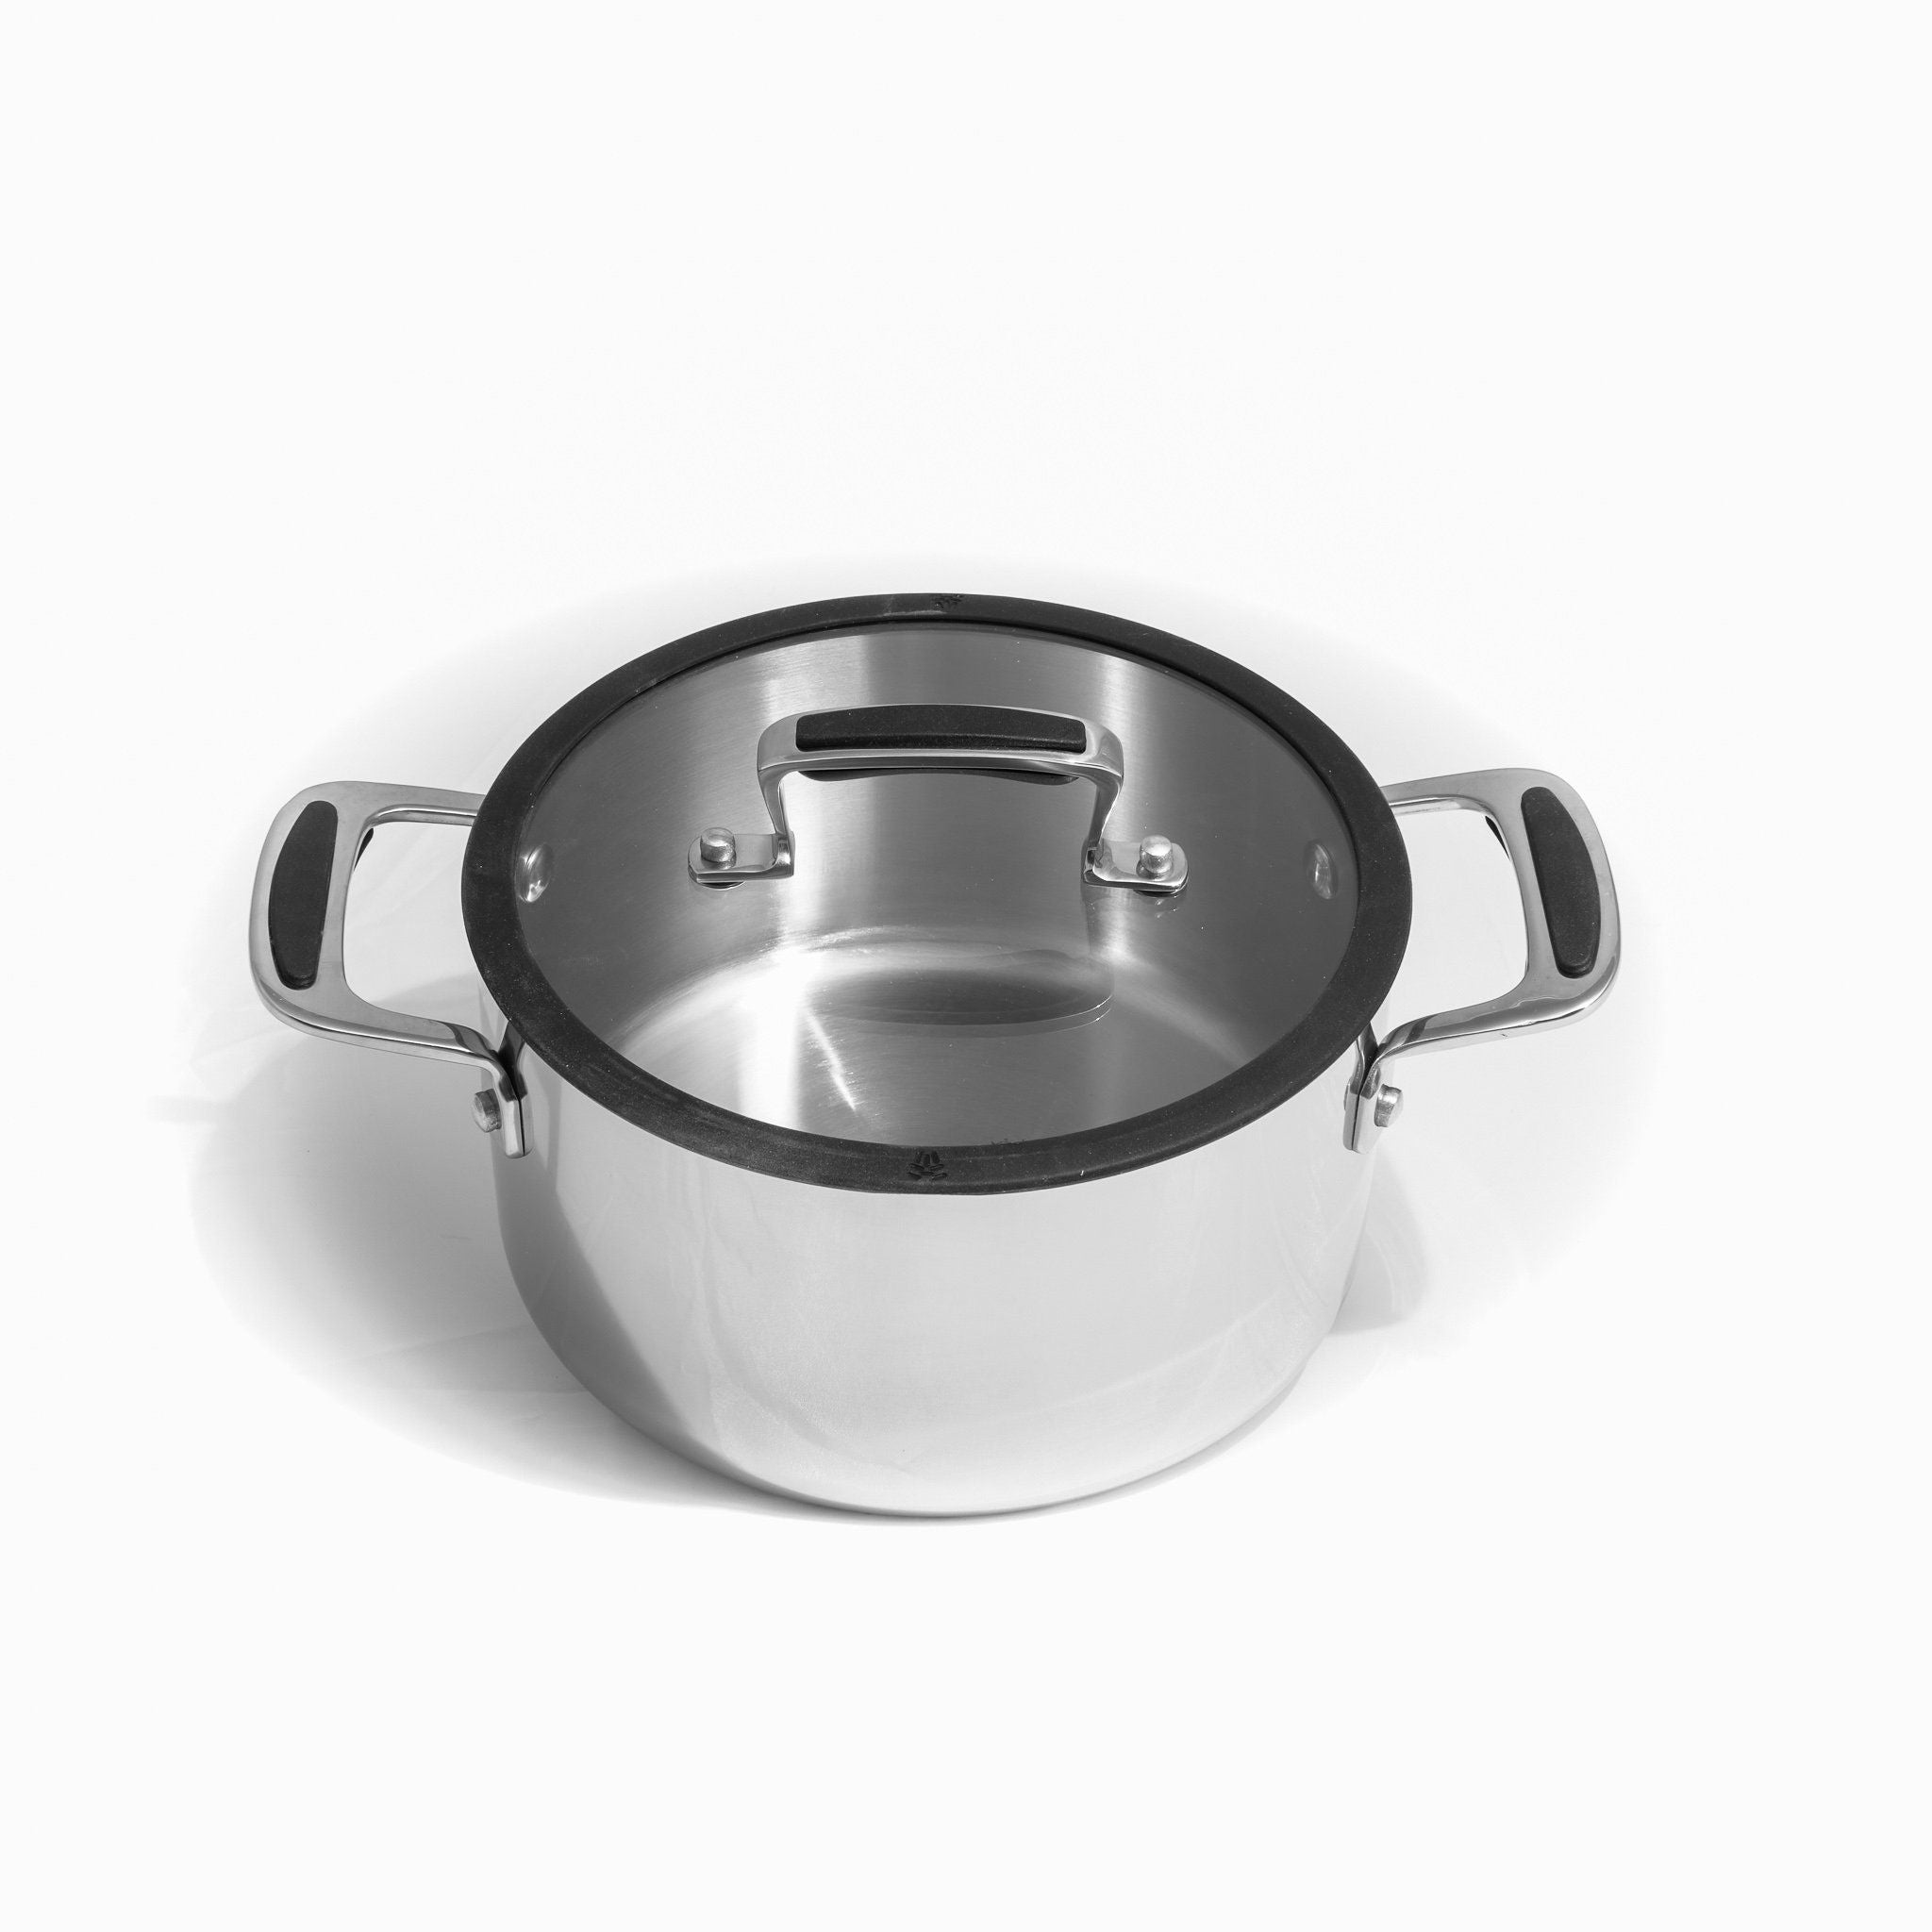 Trimetal Saucepan with Lid - 1.3 qt – Lacor Home